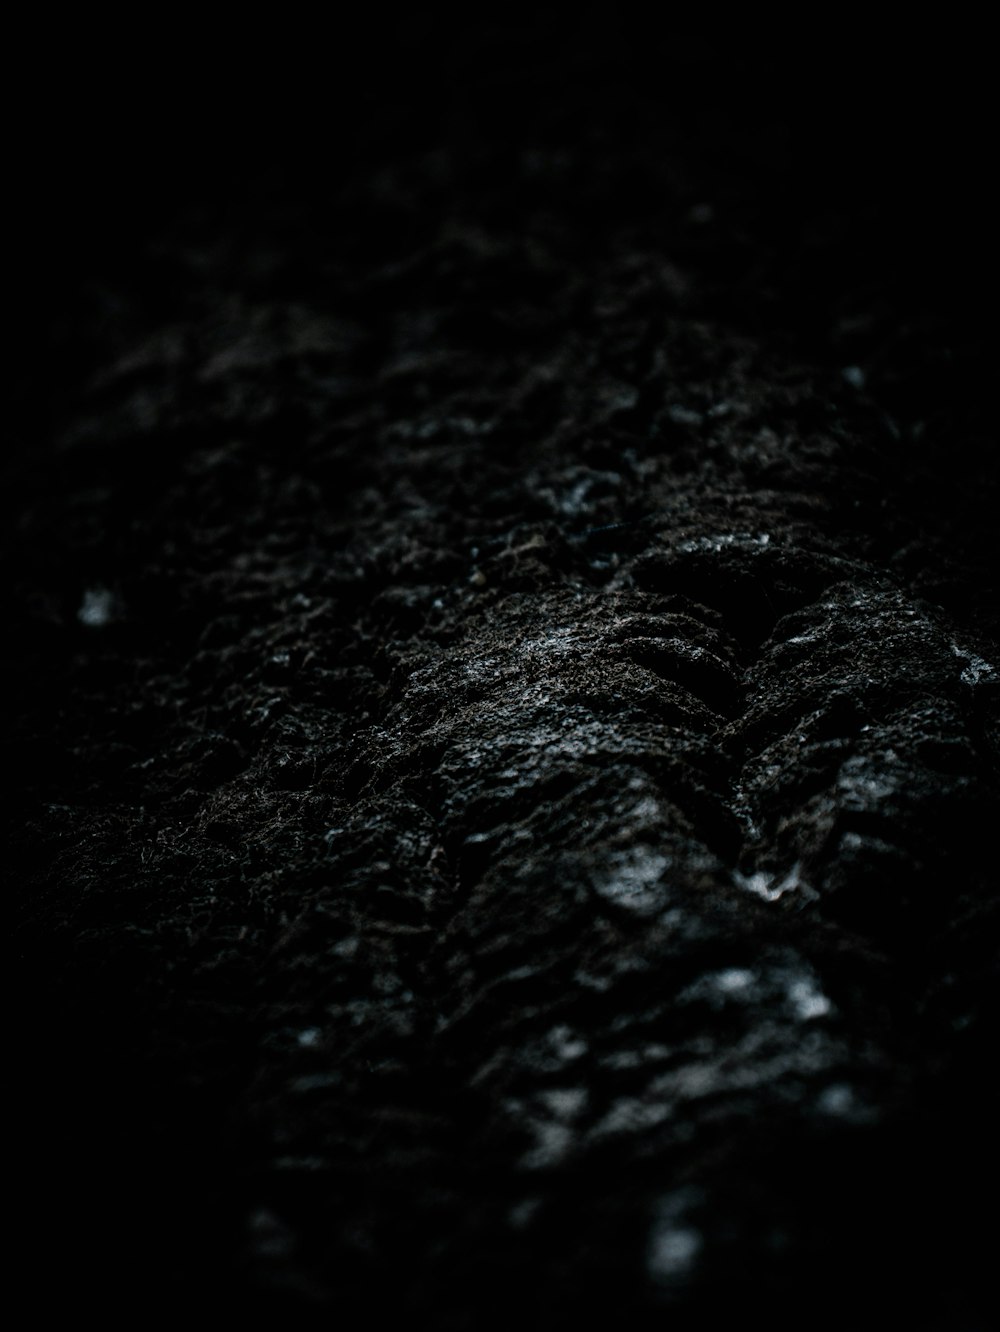 Hình ảnh vải đen gần cận Unsplash: Với những hình ảnh vải đen gần cận tuyệt đẹp trên Unsplash, bạn có thể cảm nhận được vẻ đẹp thô mộc và tính chất đặc trưng của vải đen. Một nguồn cảm hứng hoàn hảo cho các dự án thiết kế của bạn.